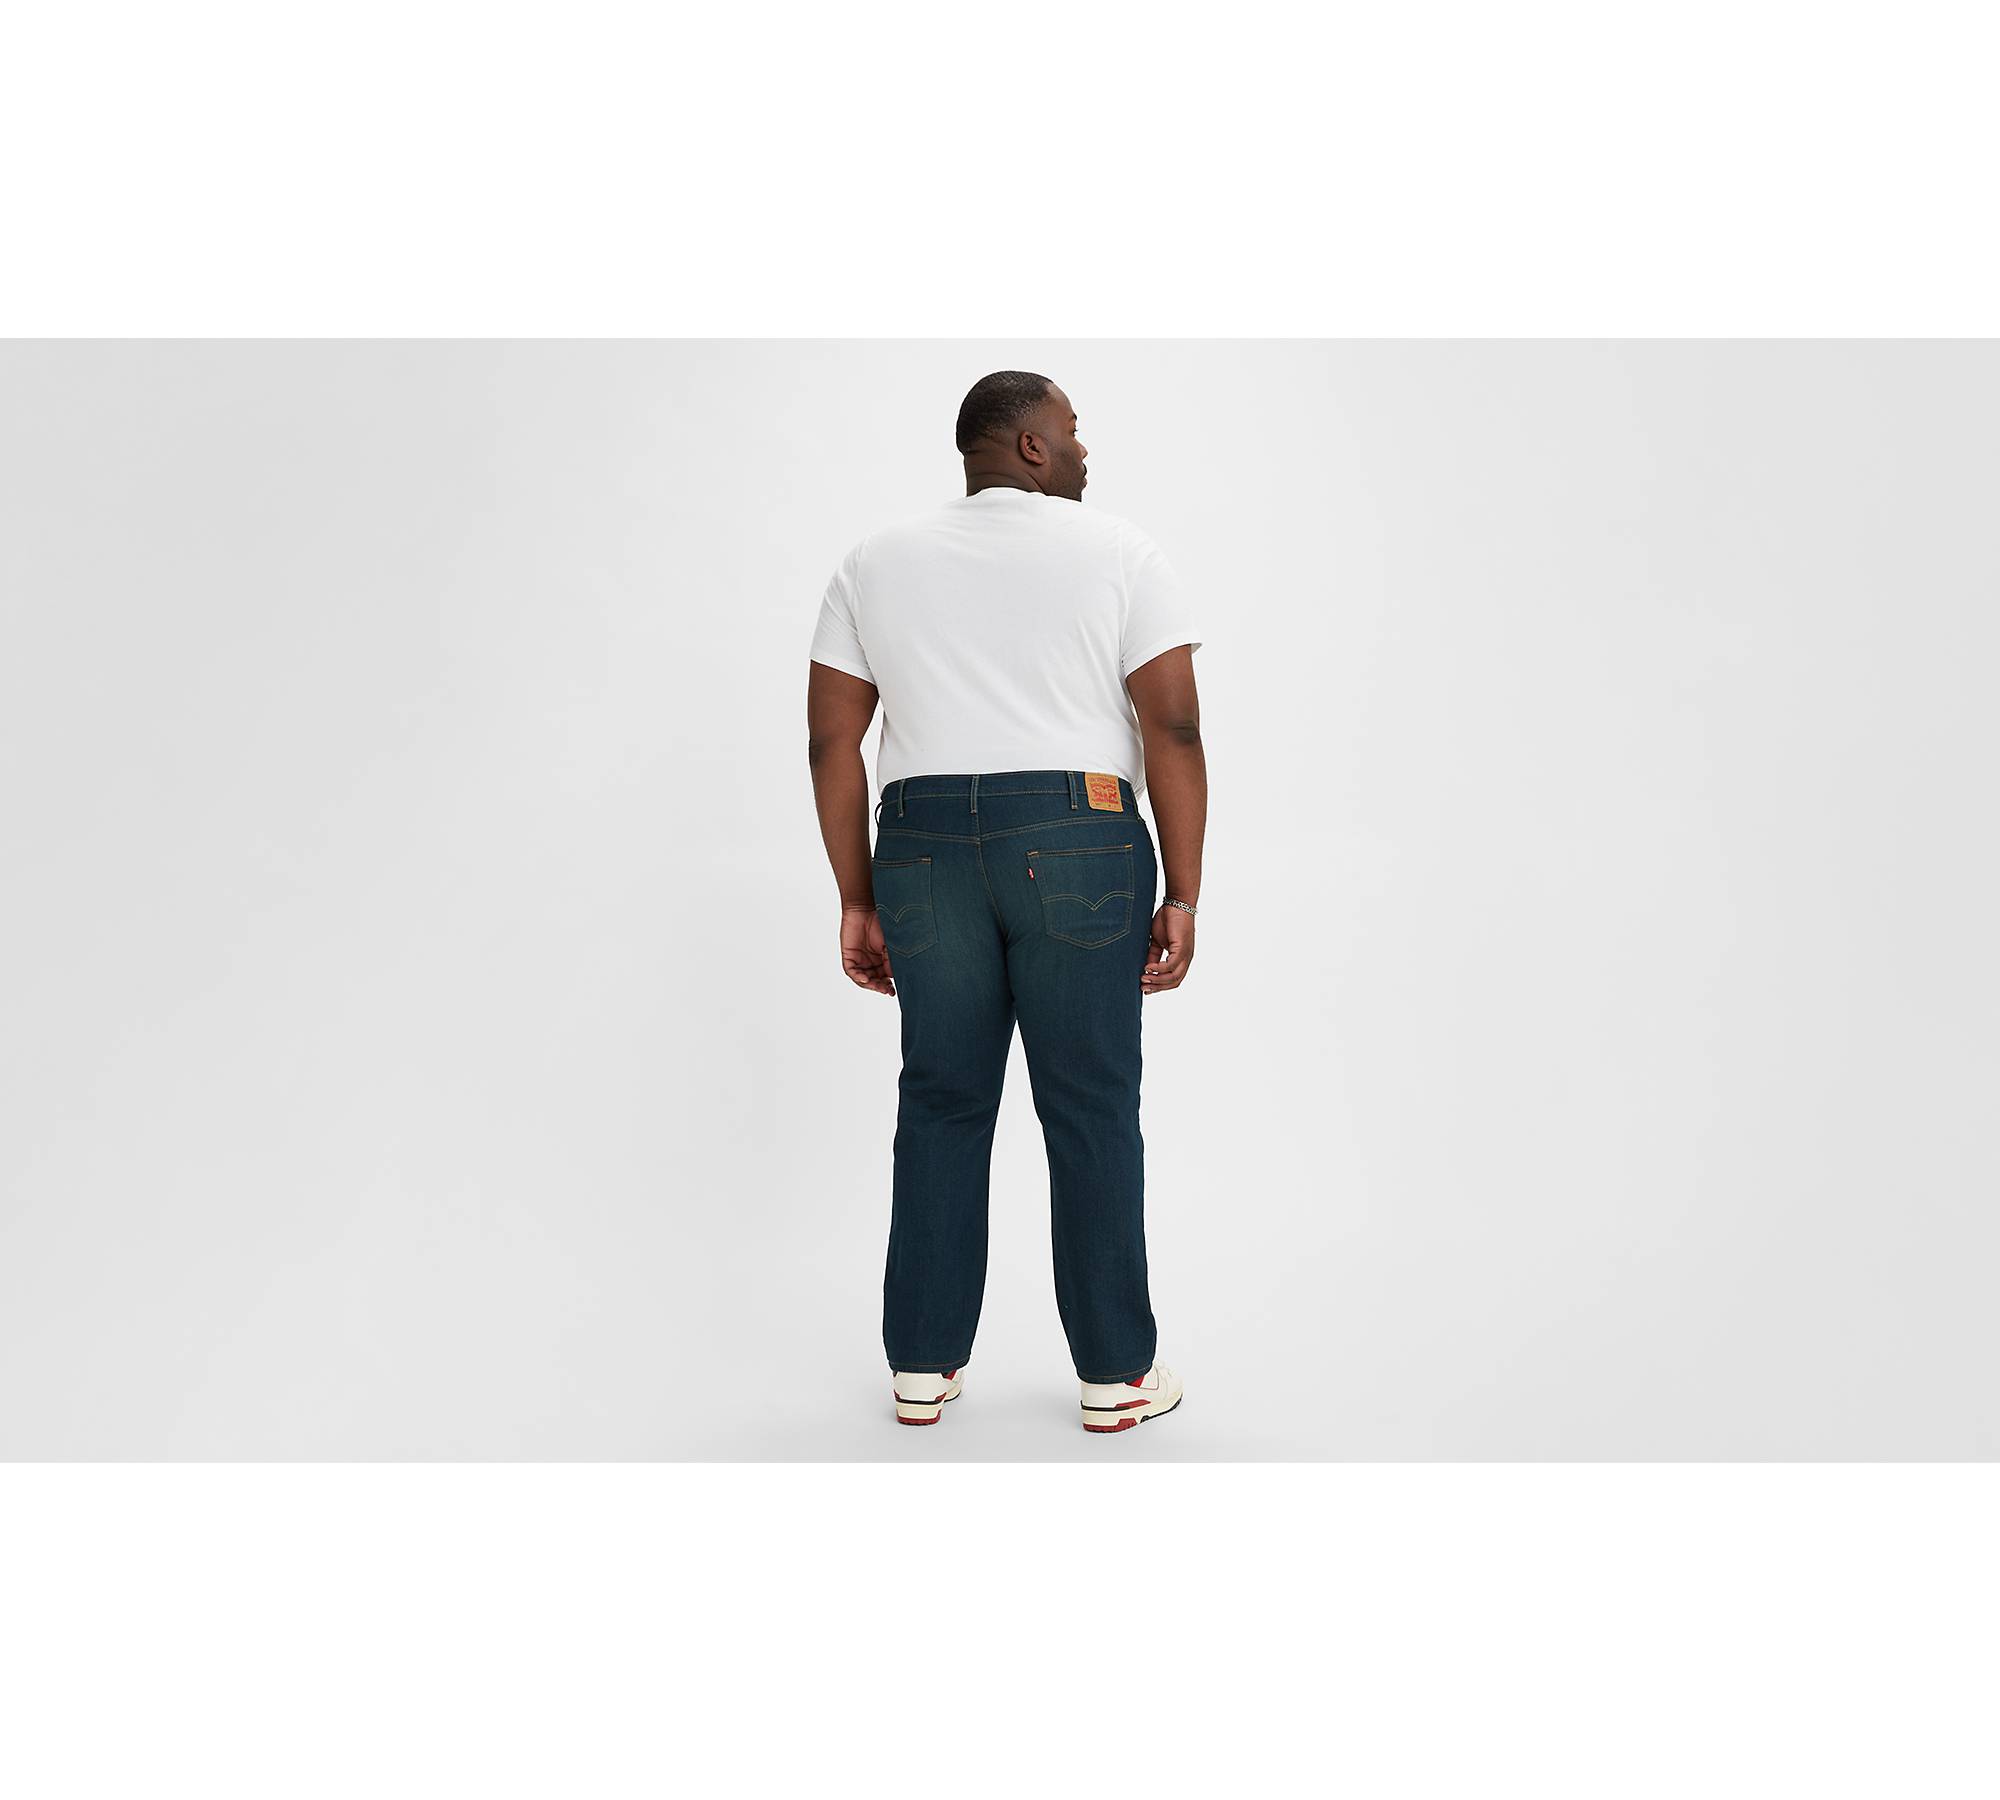 541™ Athletic Taper Men's Jeans - Medium Wash